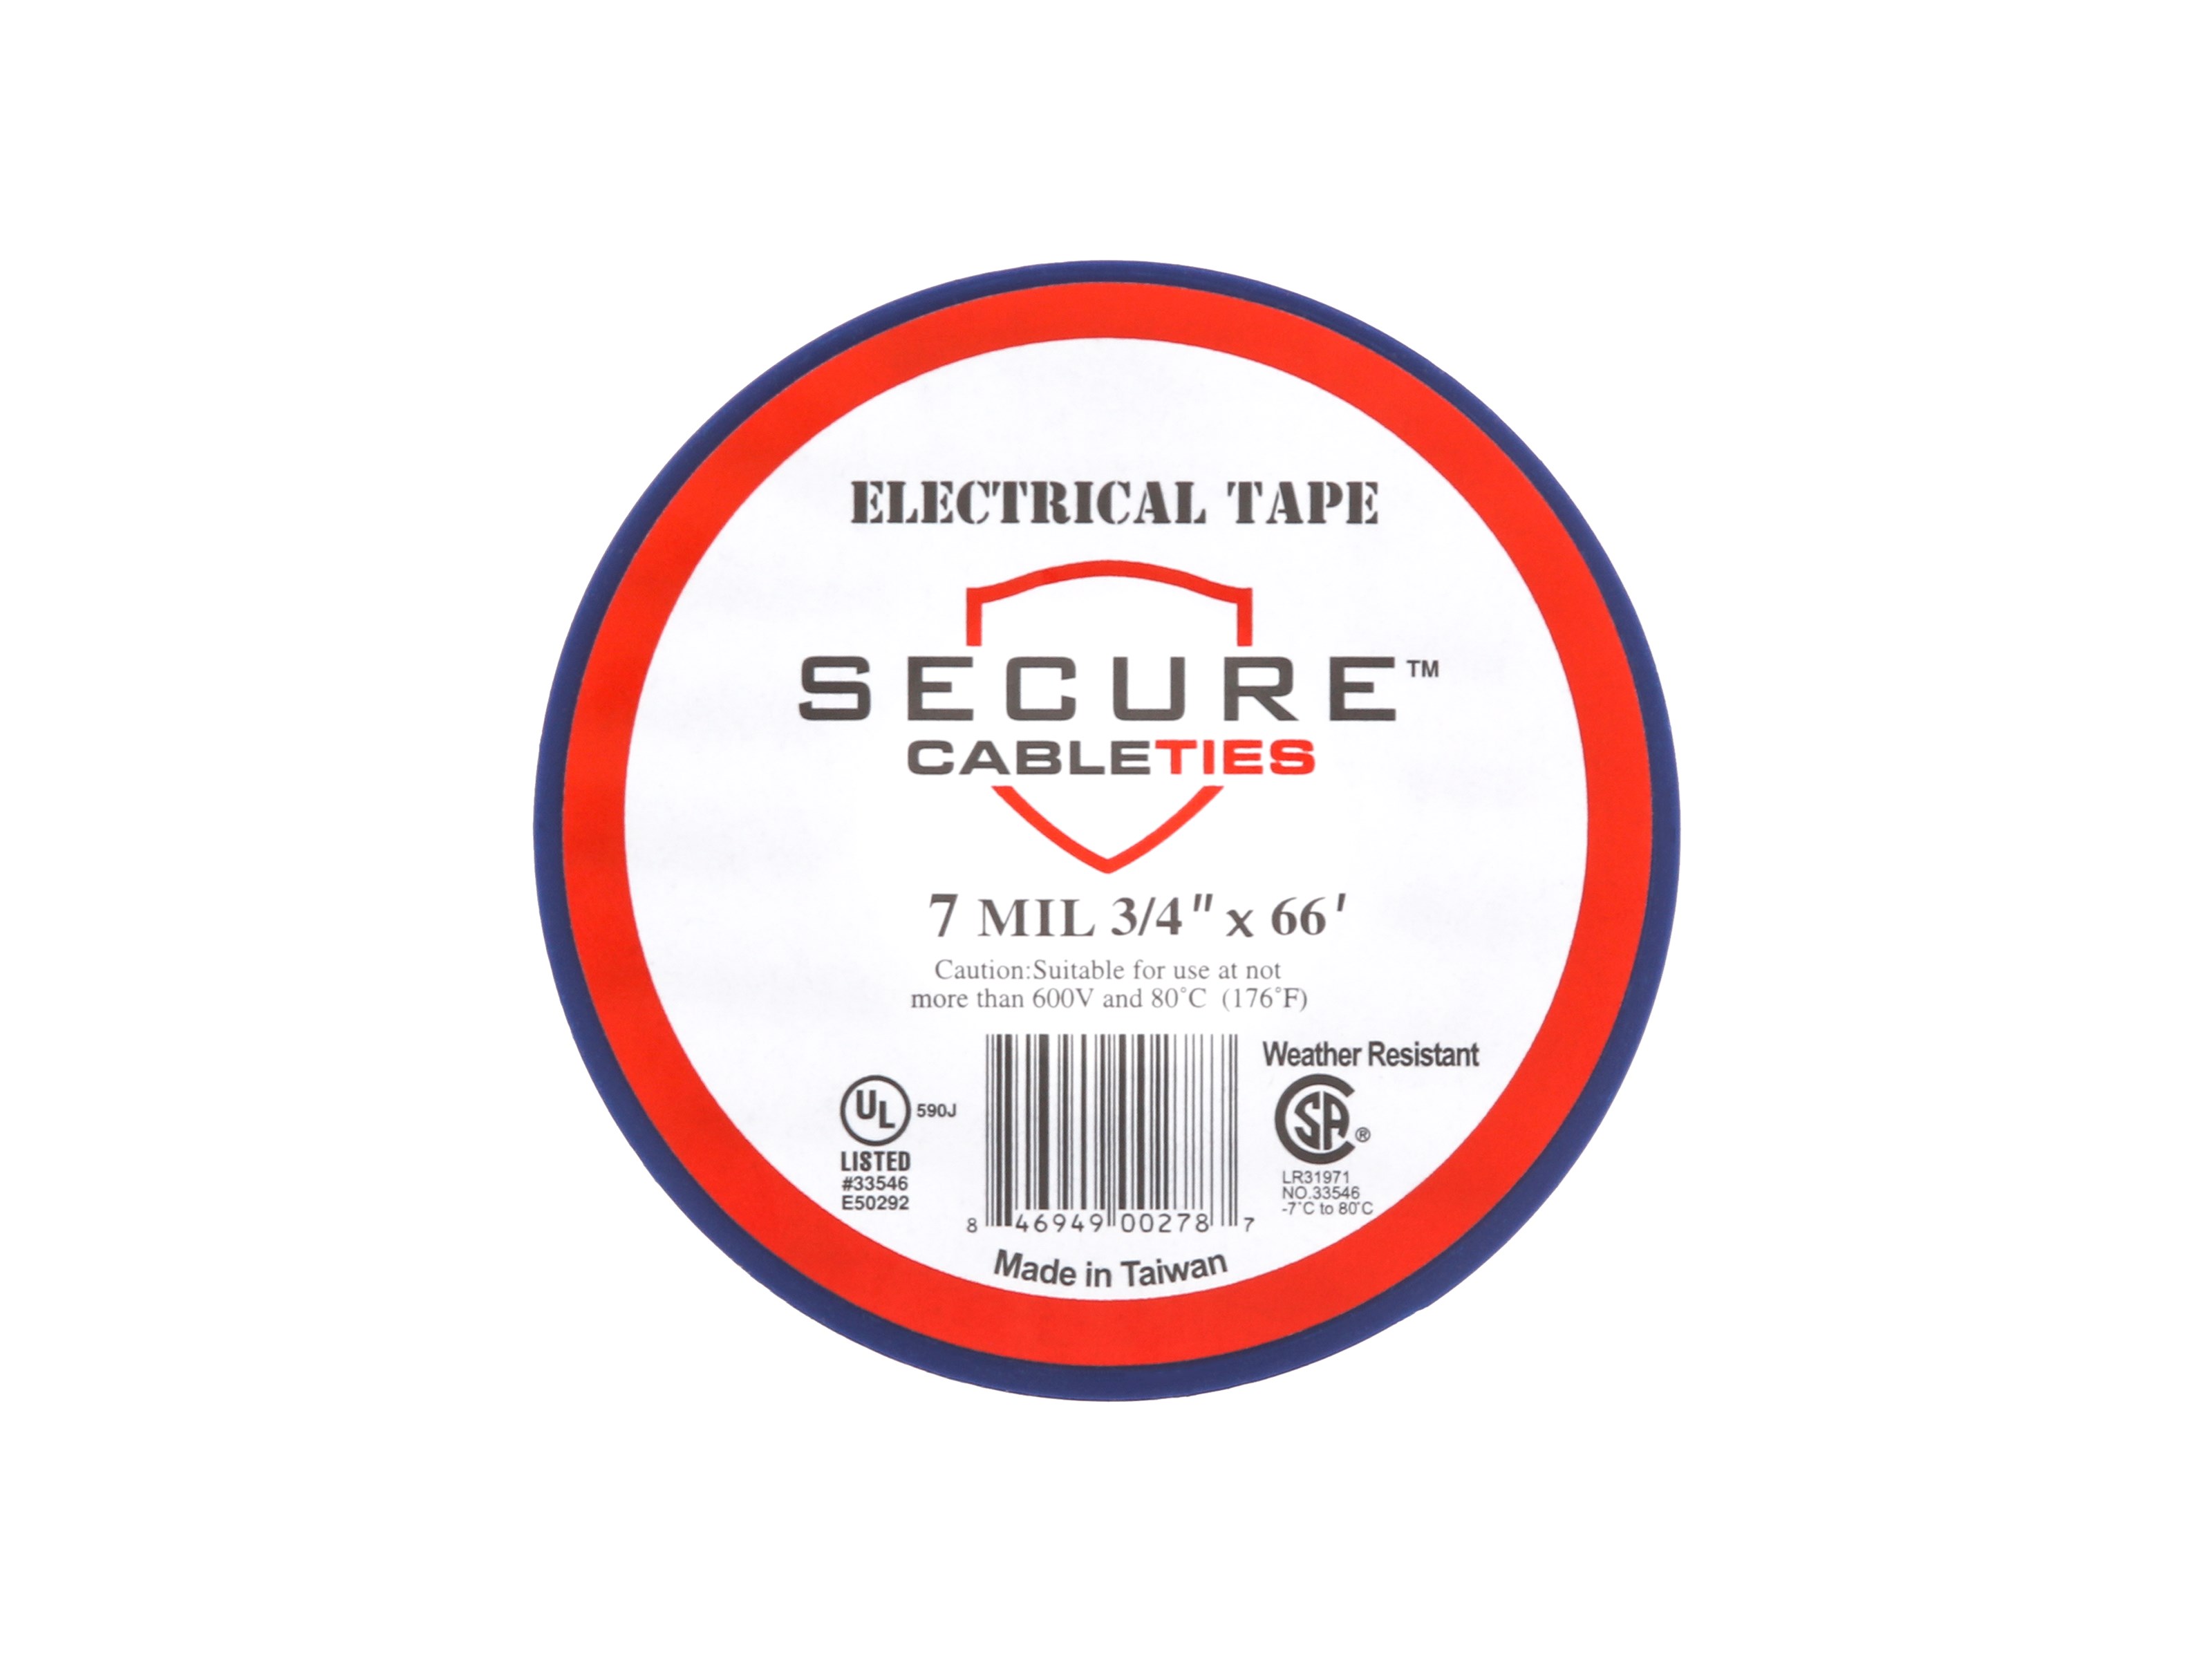 Shop 34X66P - Electrical Tape - 3M - URI